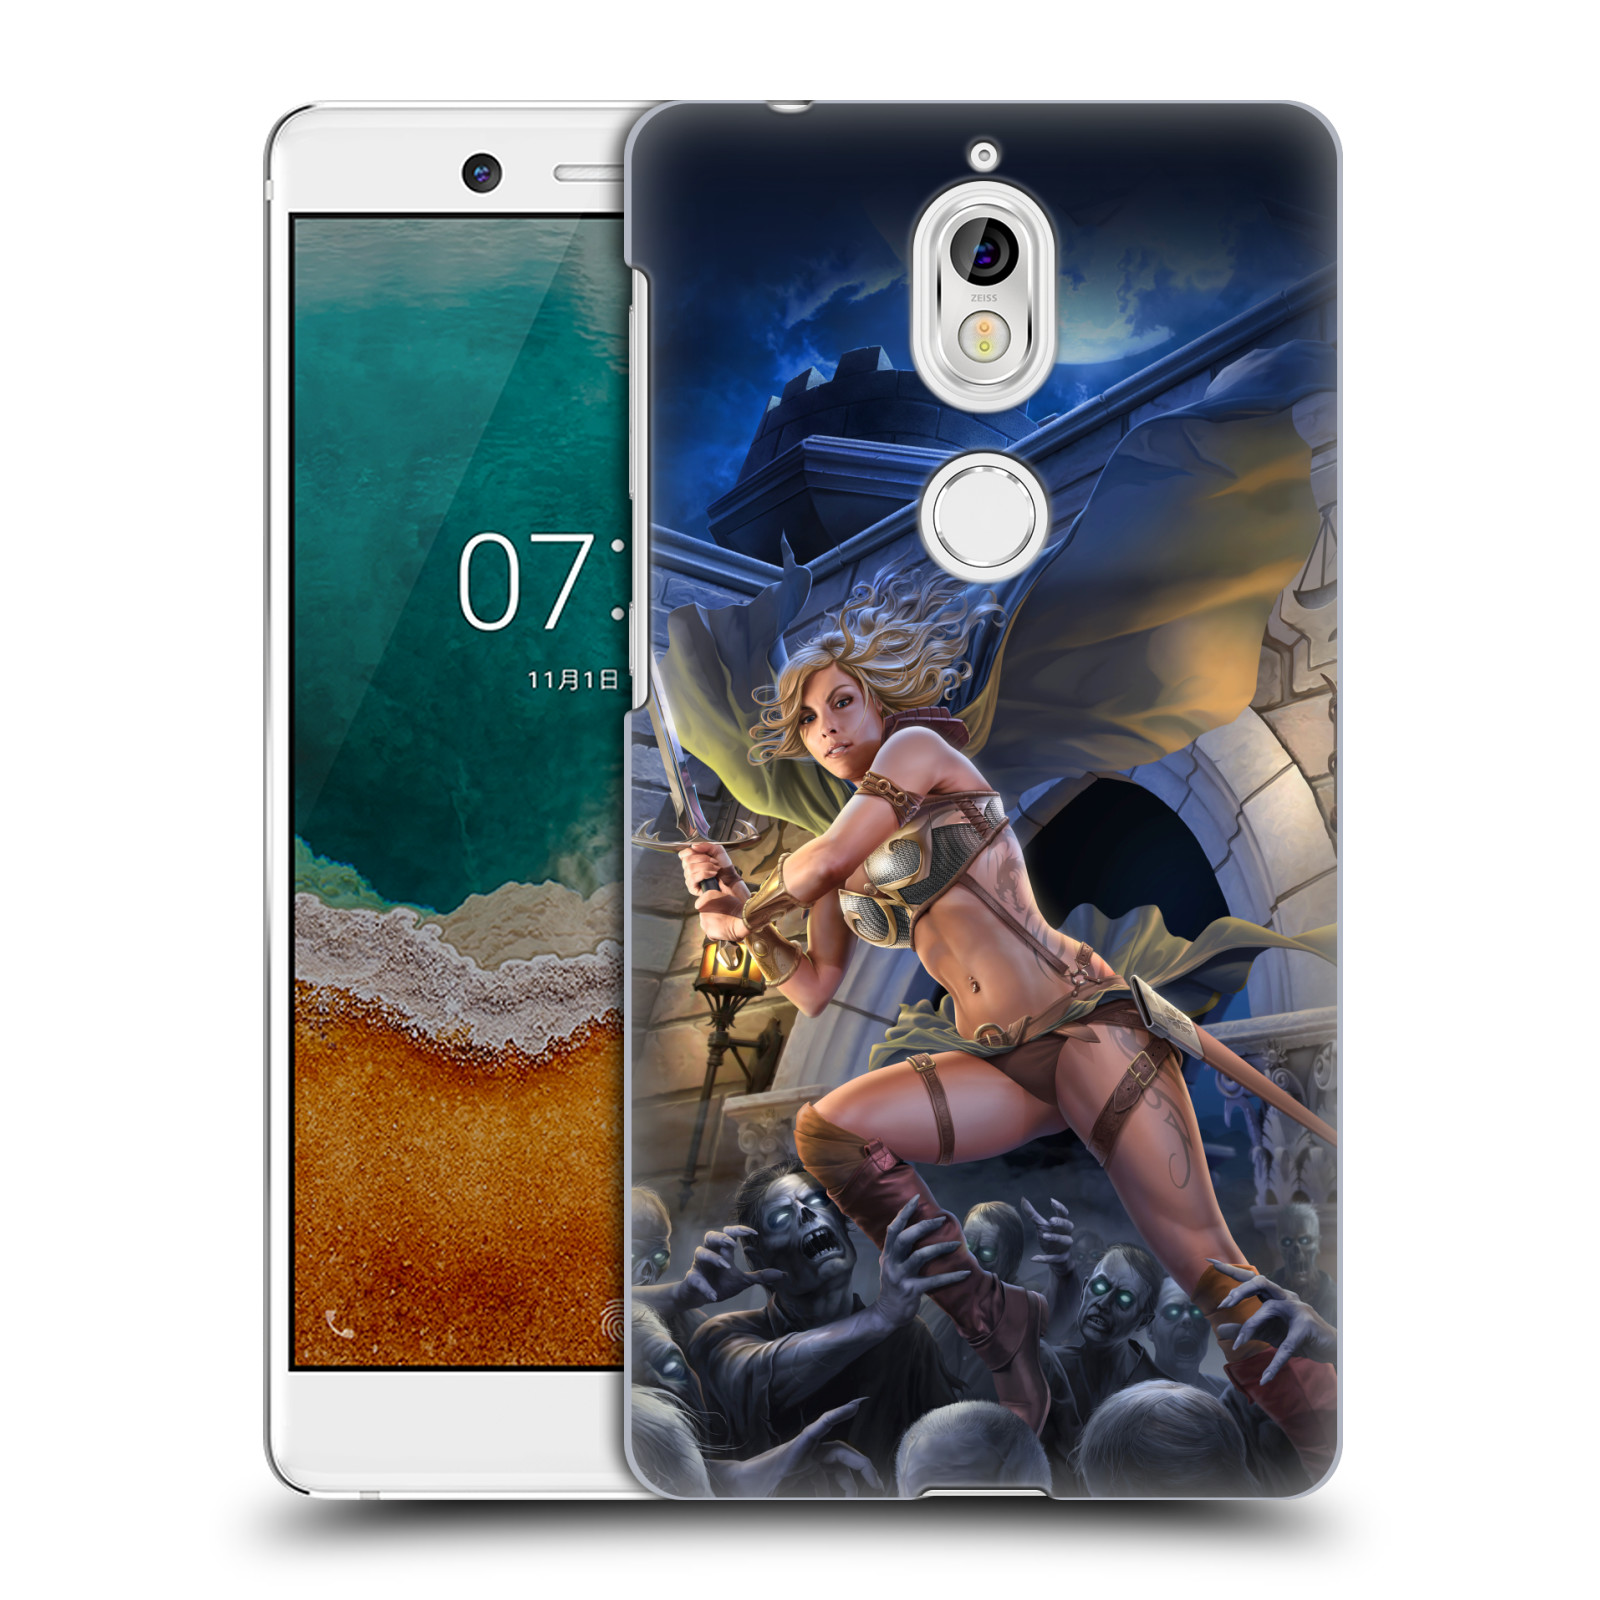 Pouzdro na mobil Nokia 7 - HEAD CASE - Fantasy kresby Tom Wood - Princezna bojovnice a zombies